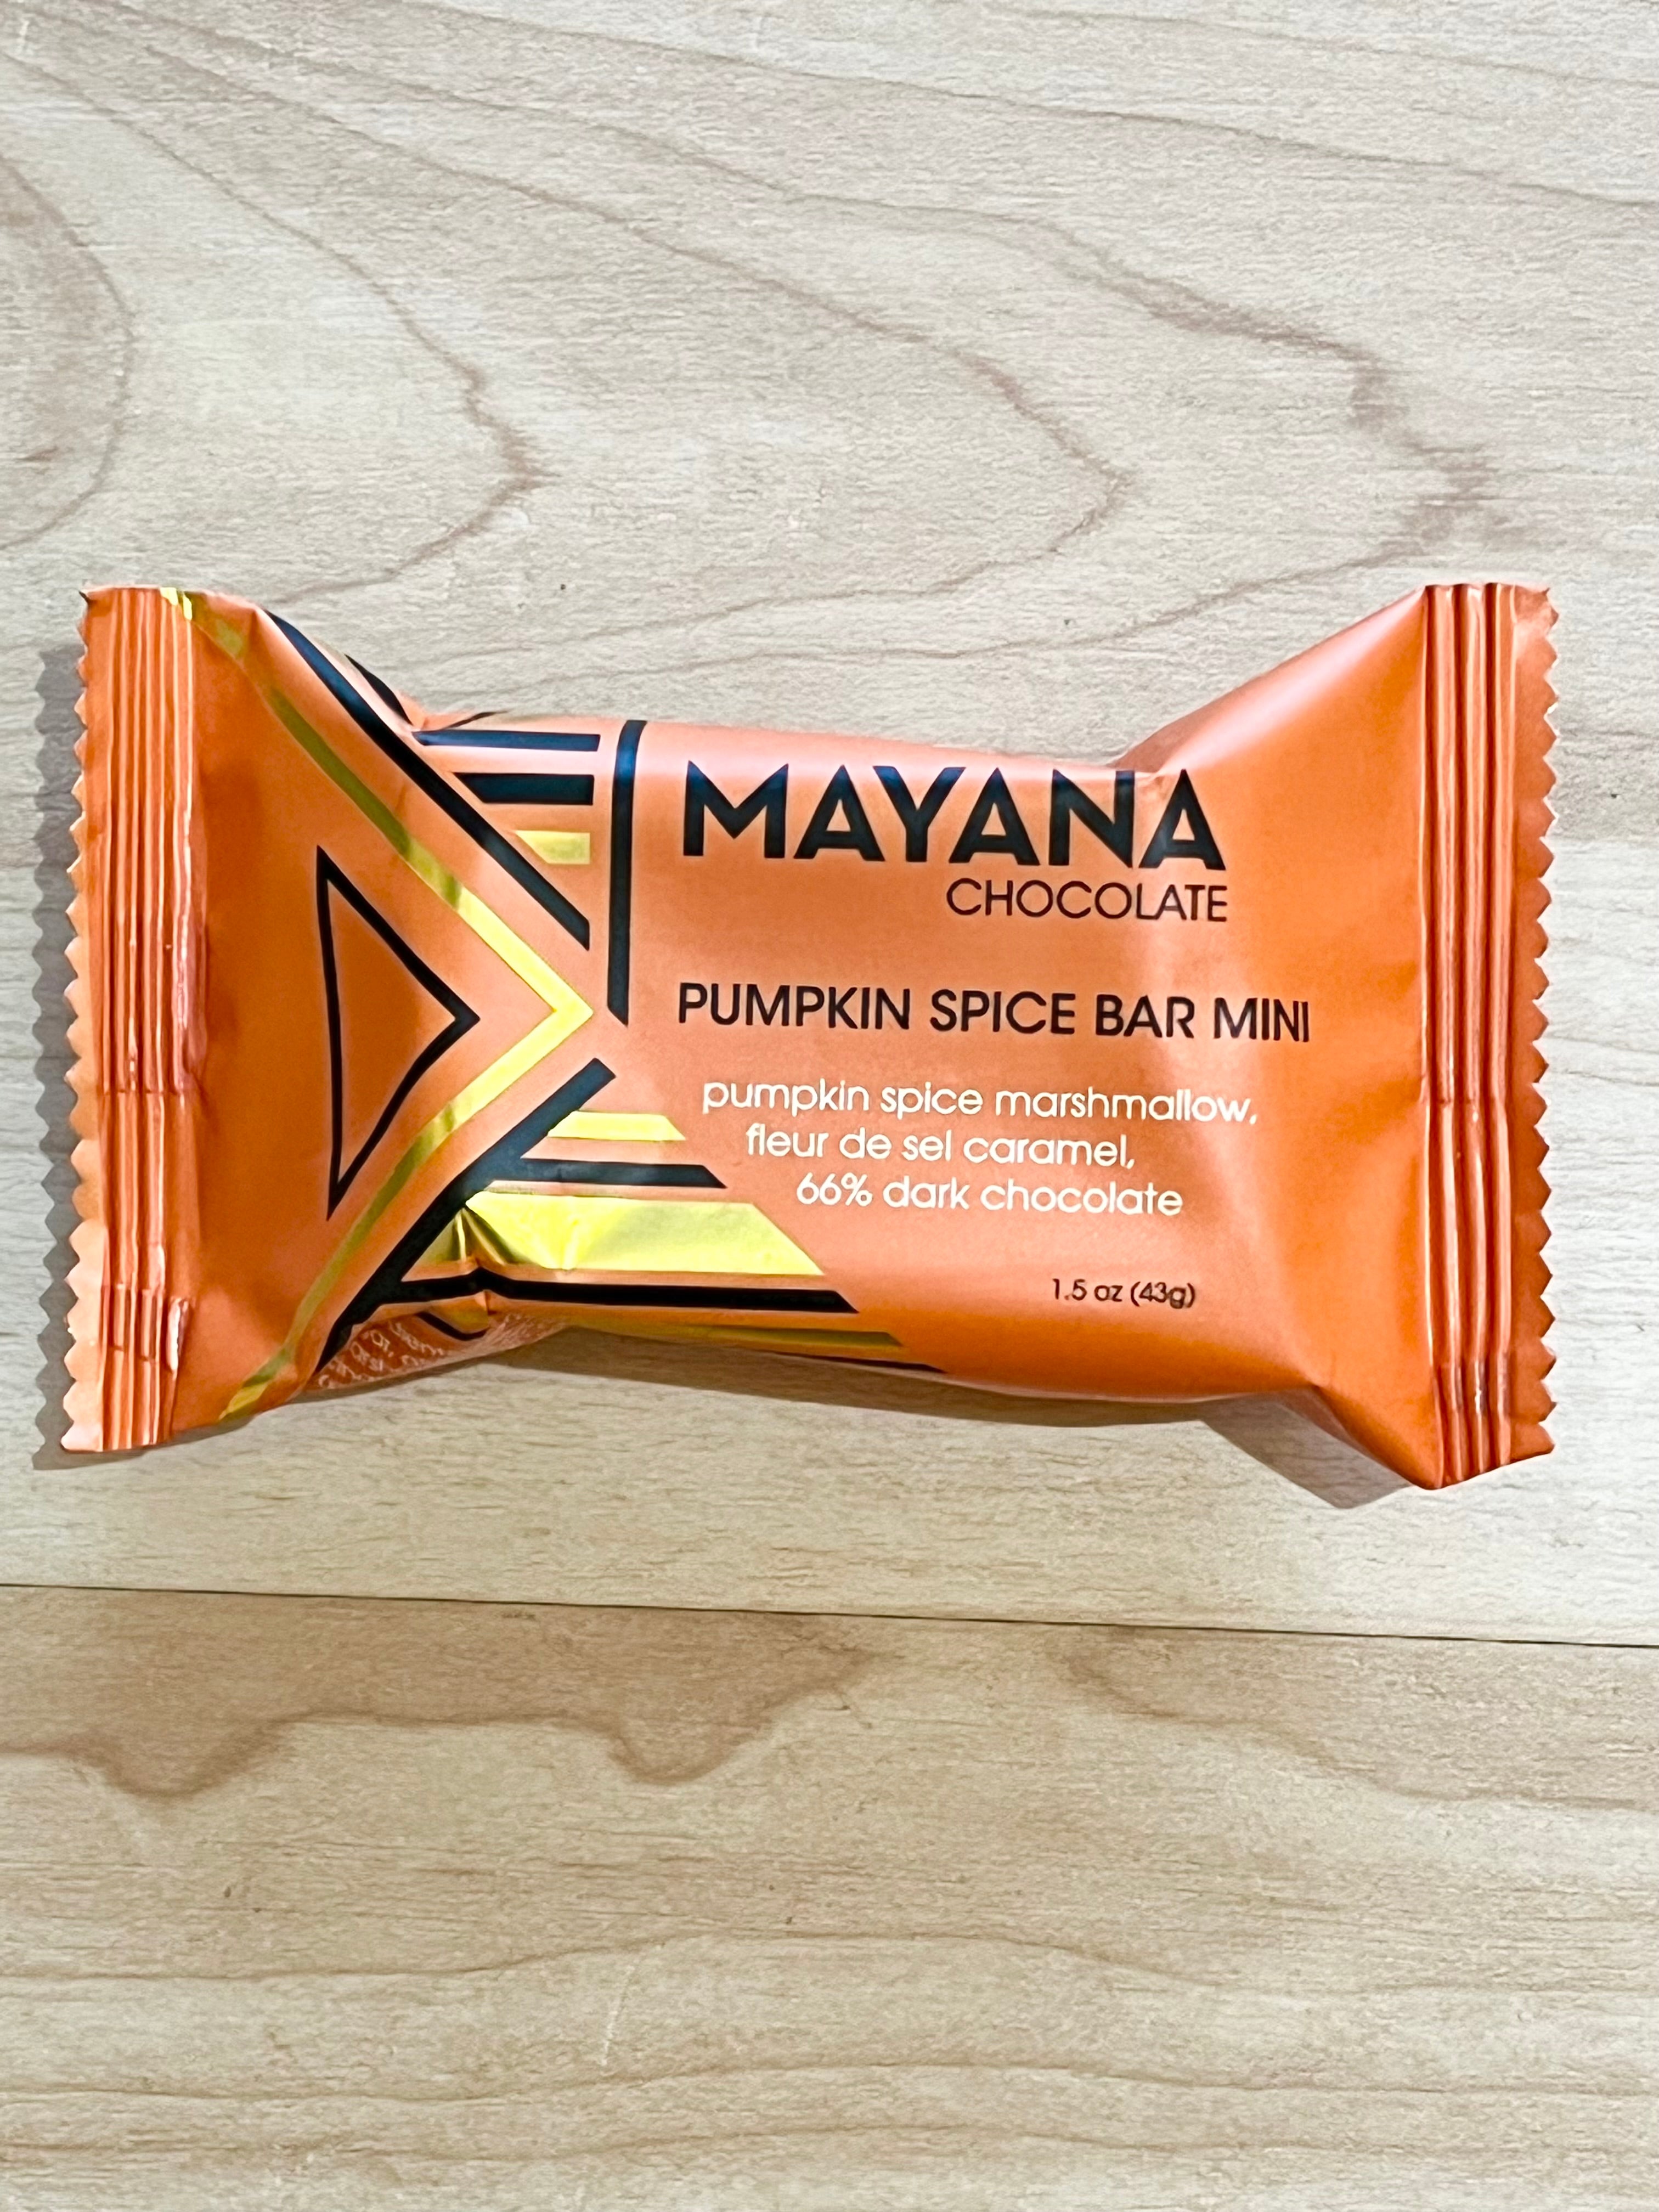 Mini Chocolate bars from Mayana